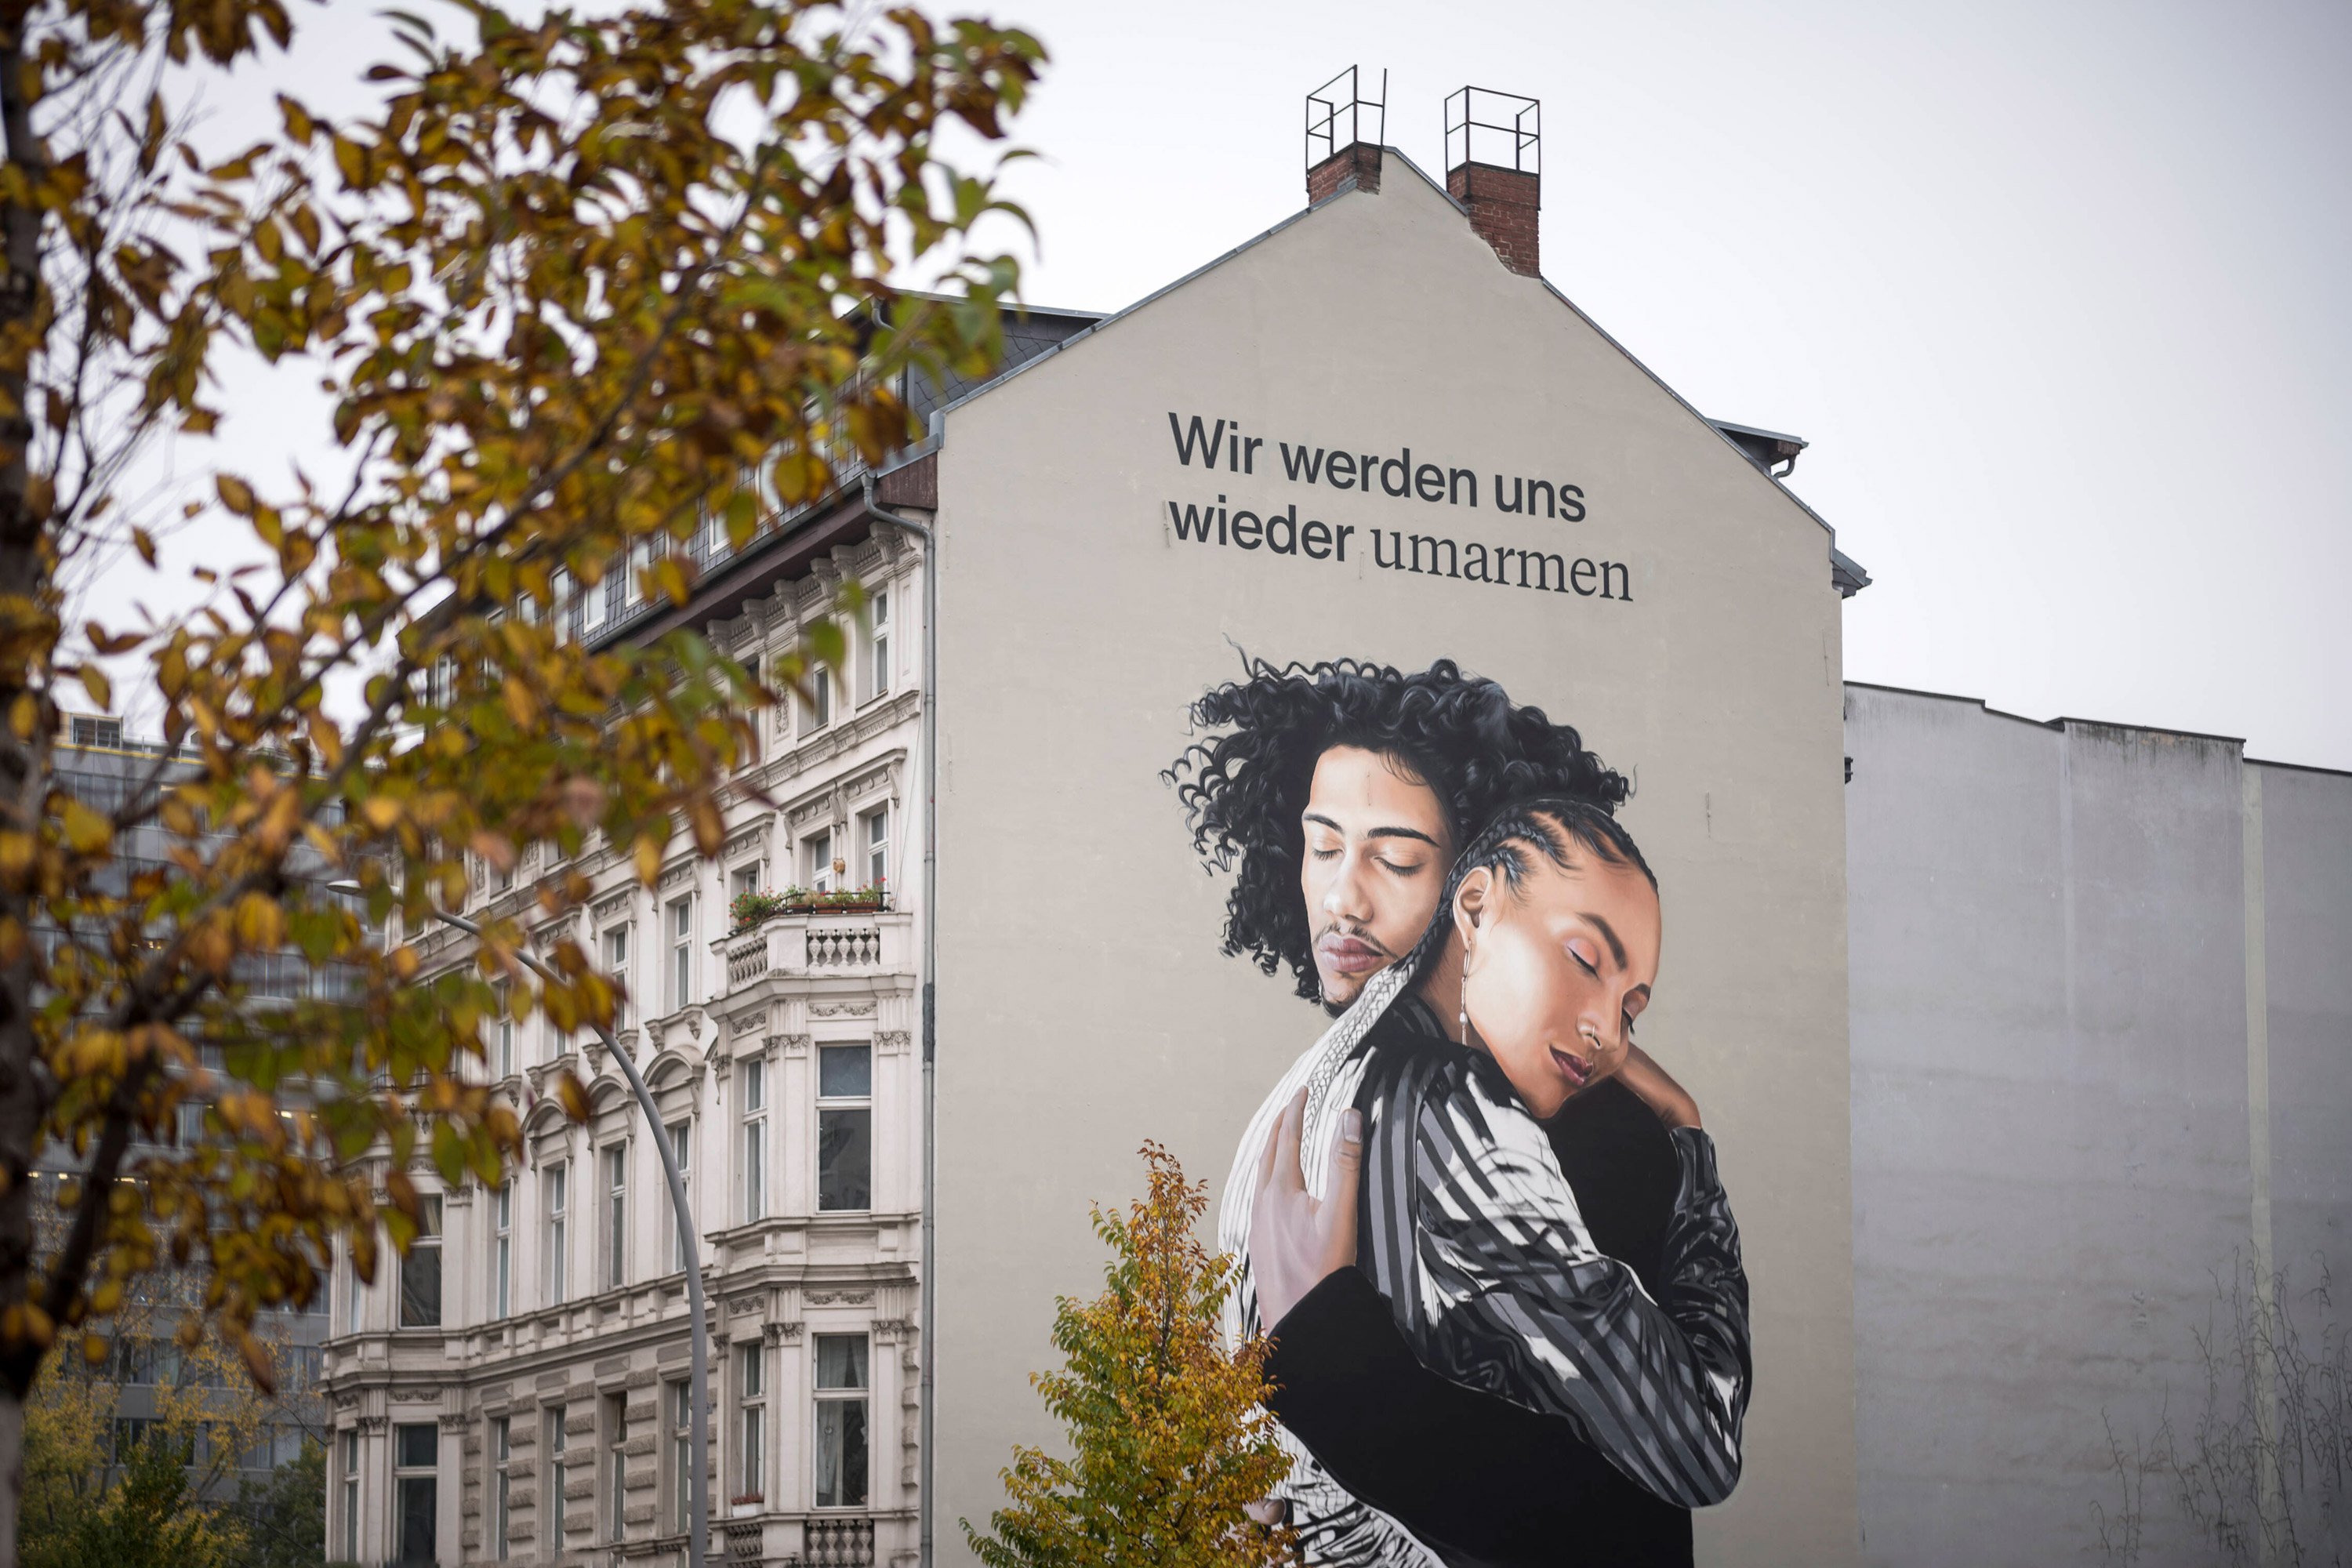 Hausfassade mit Zeichnung von Umarmung und Spruch "Wir werden uns wieder umarmen"